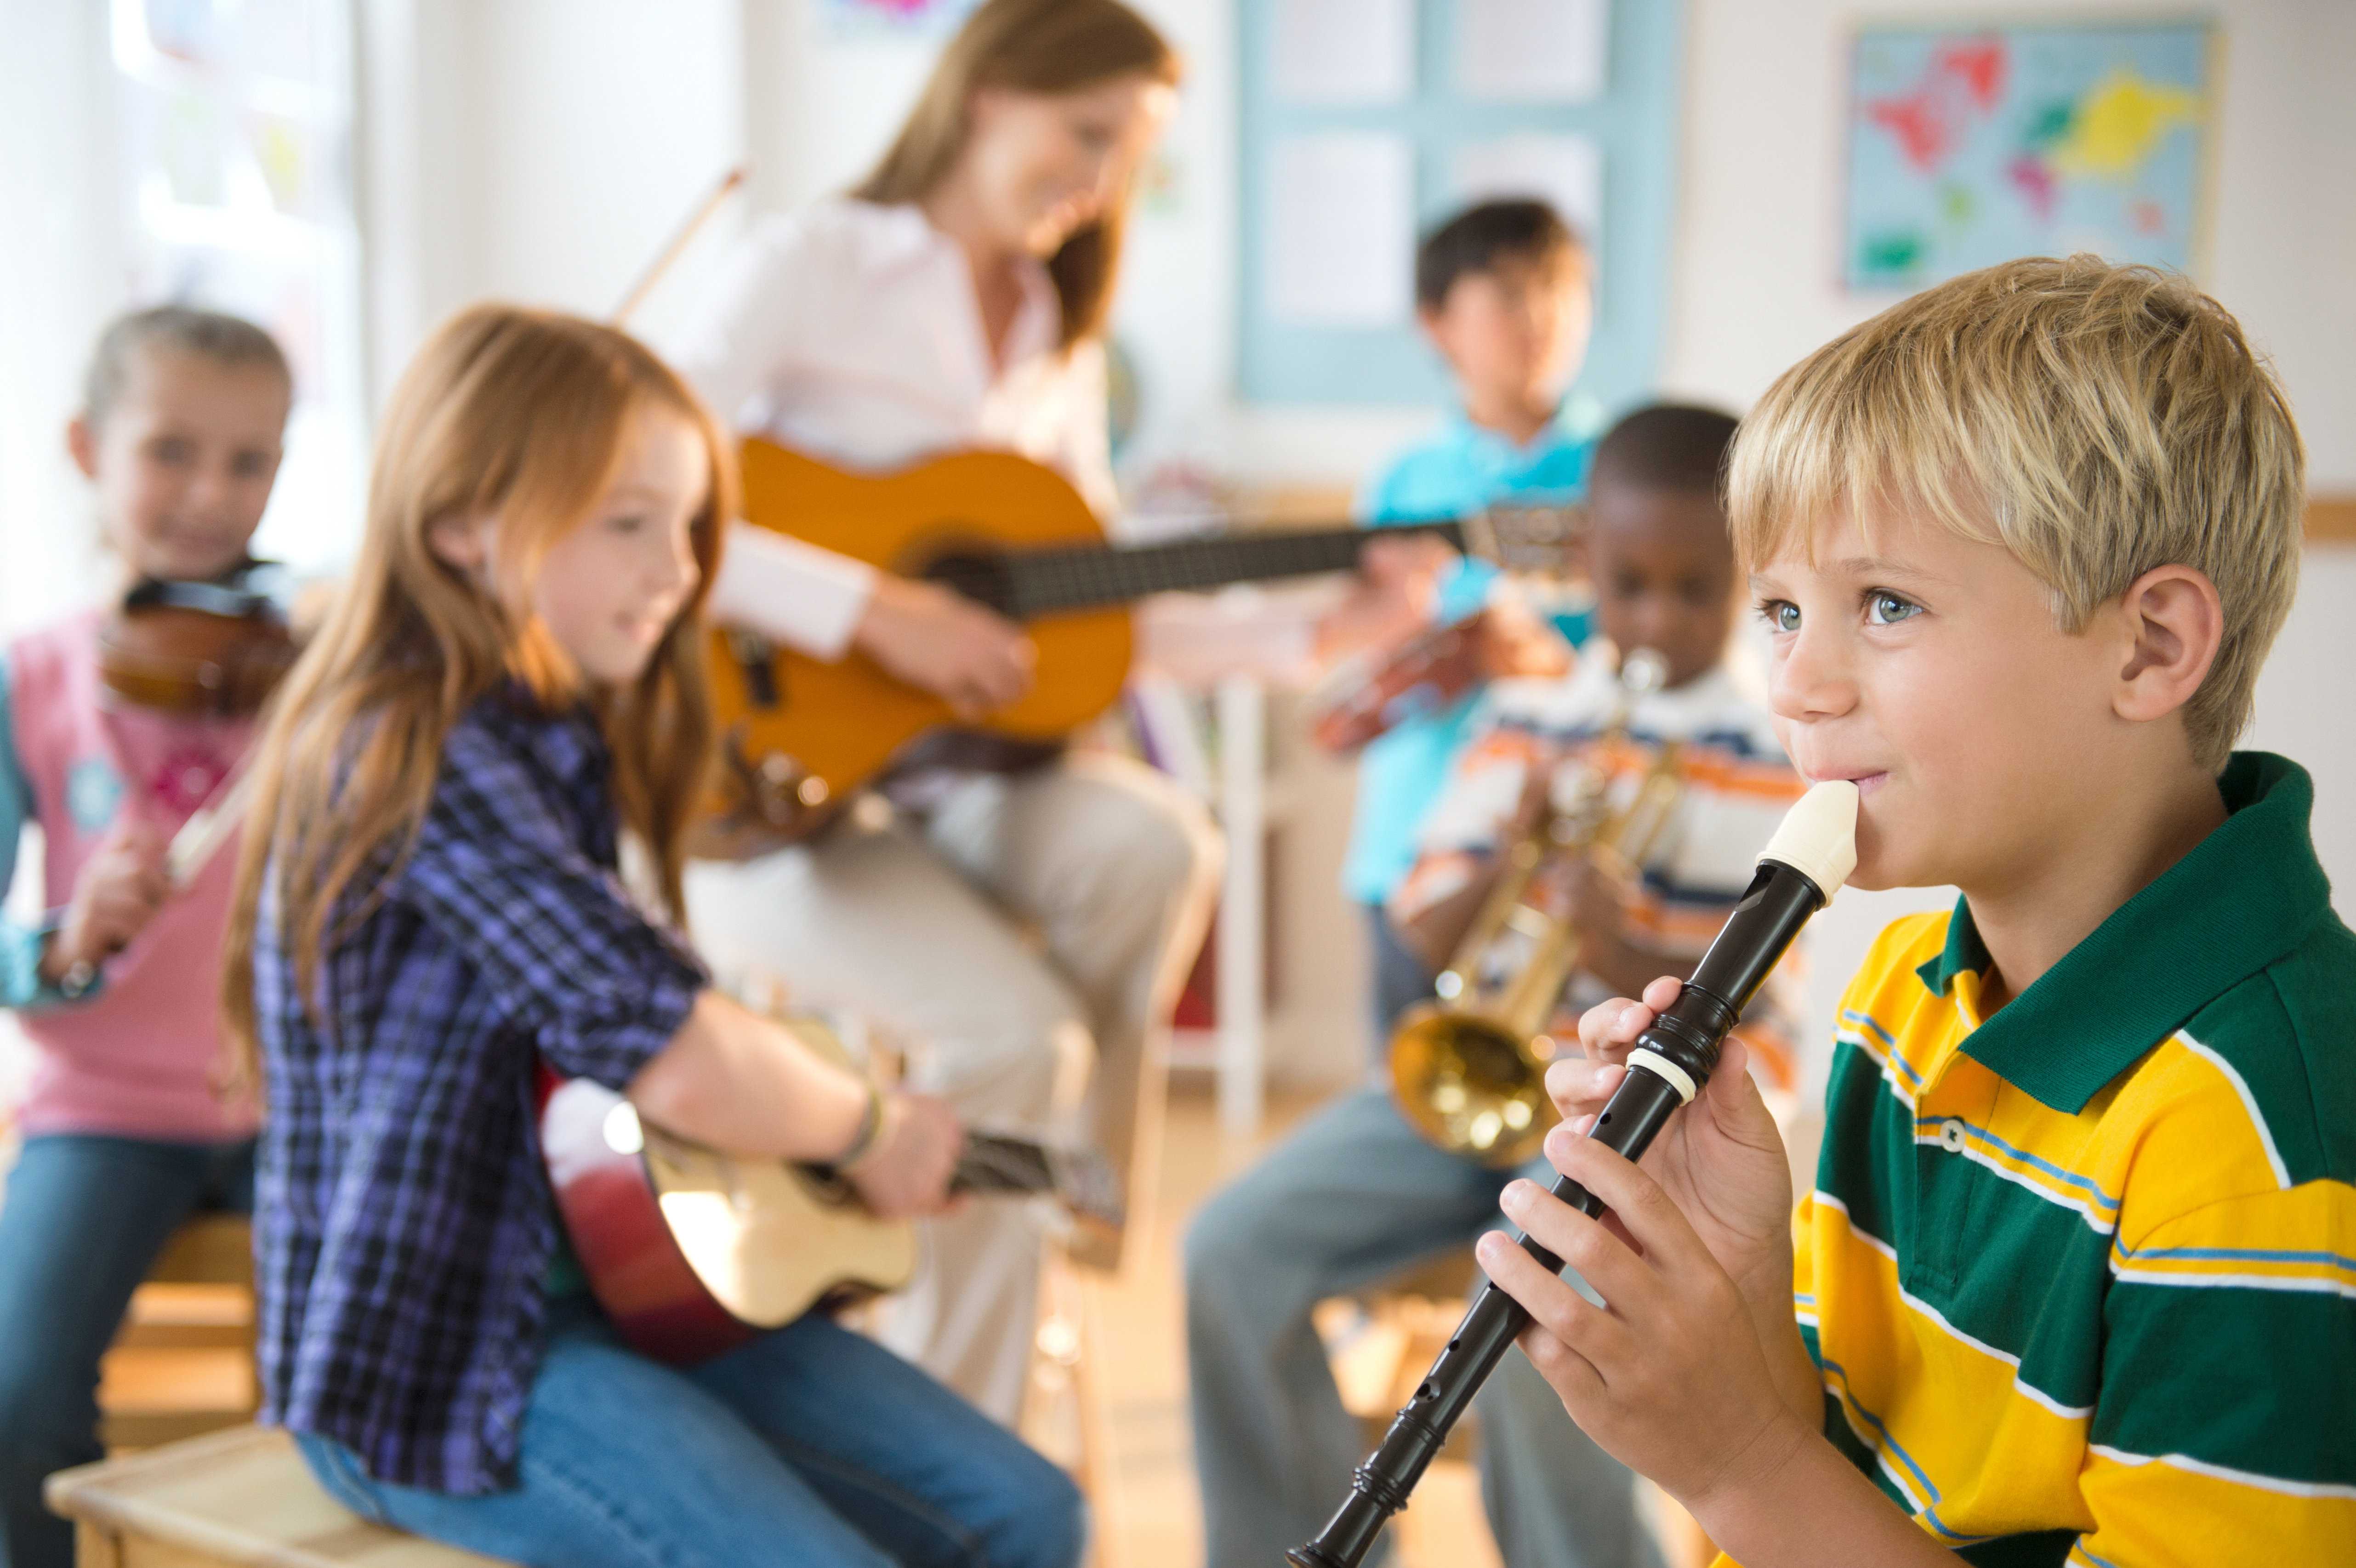 Загадки про музыкальные инструменты для детей с ответами